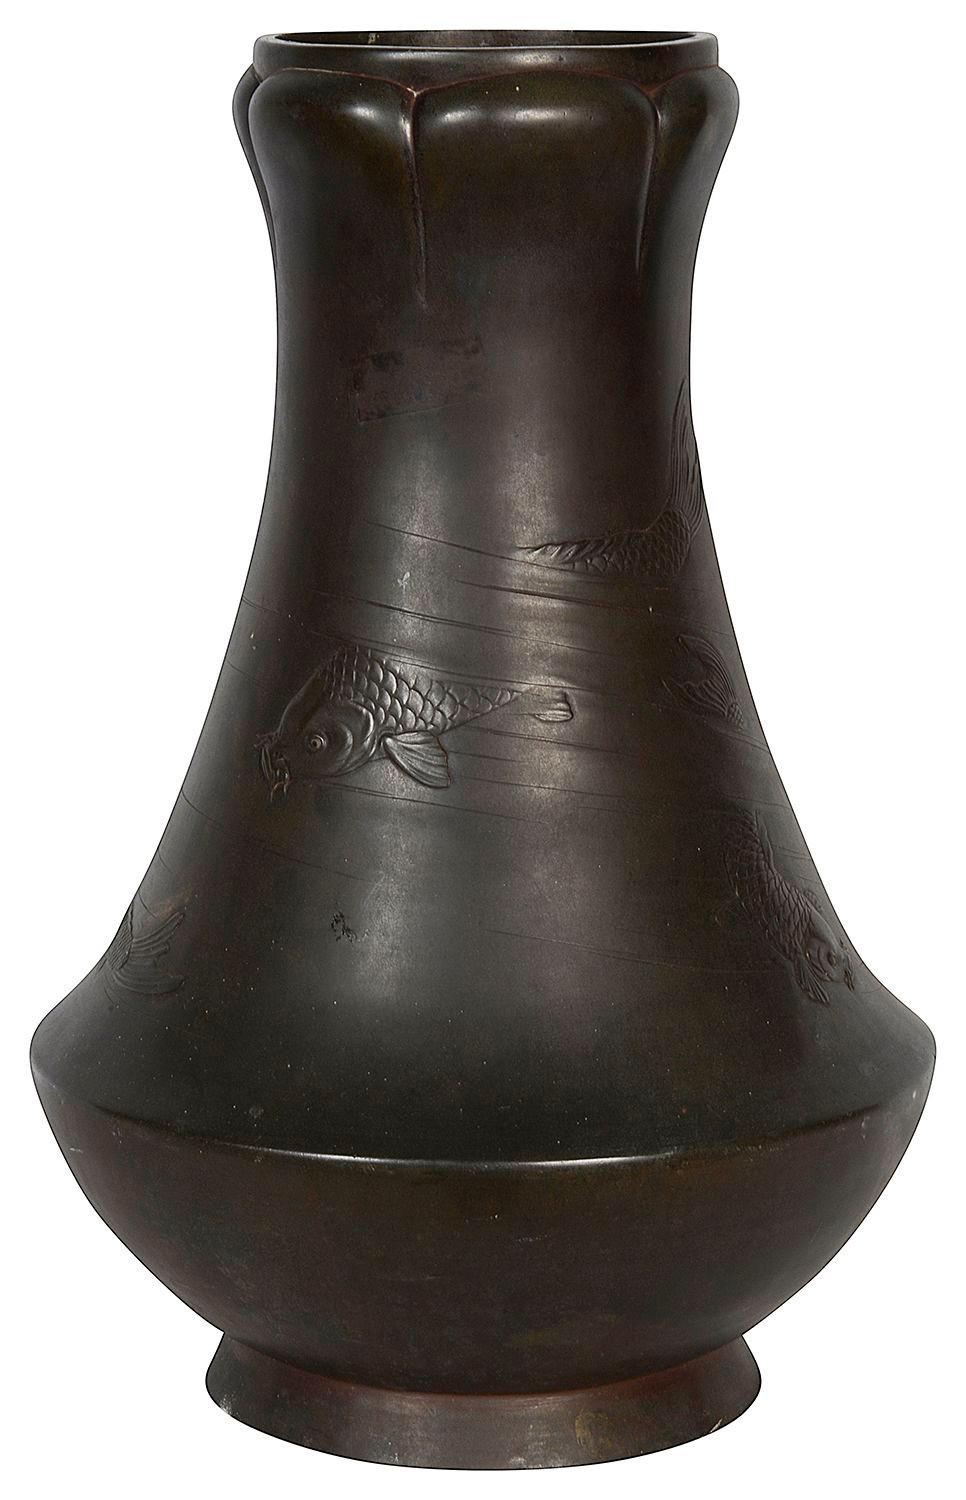 Eine sehr beeindruckende und bezaubernde japanische Vase aus der Meiji-Zeit (1868-1912) aus patinierter Bronze, die einen schwimmenden Karpfen darstellt.

57380 ACYN